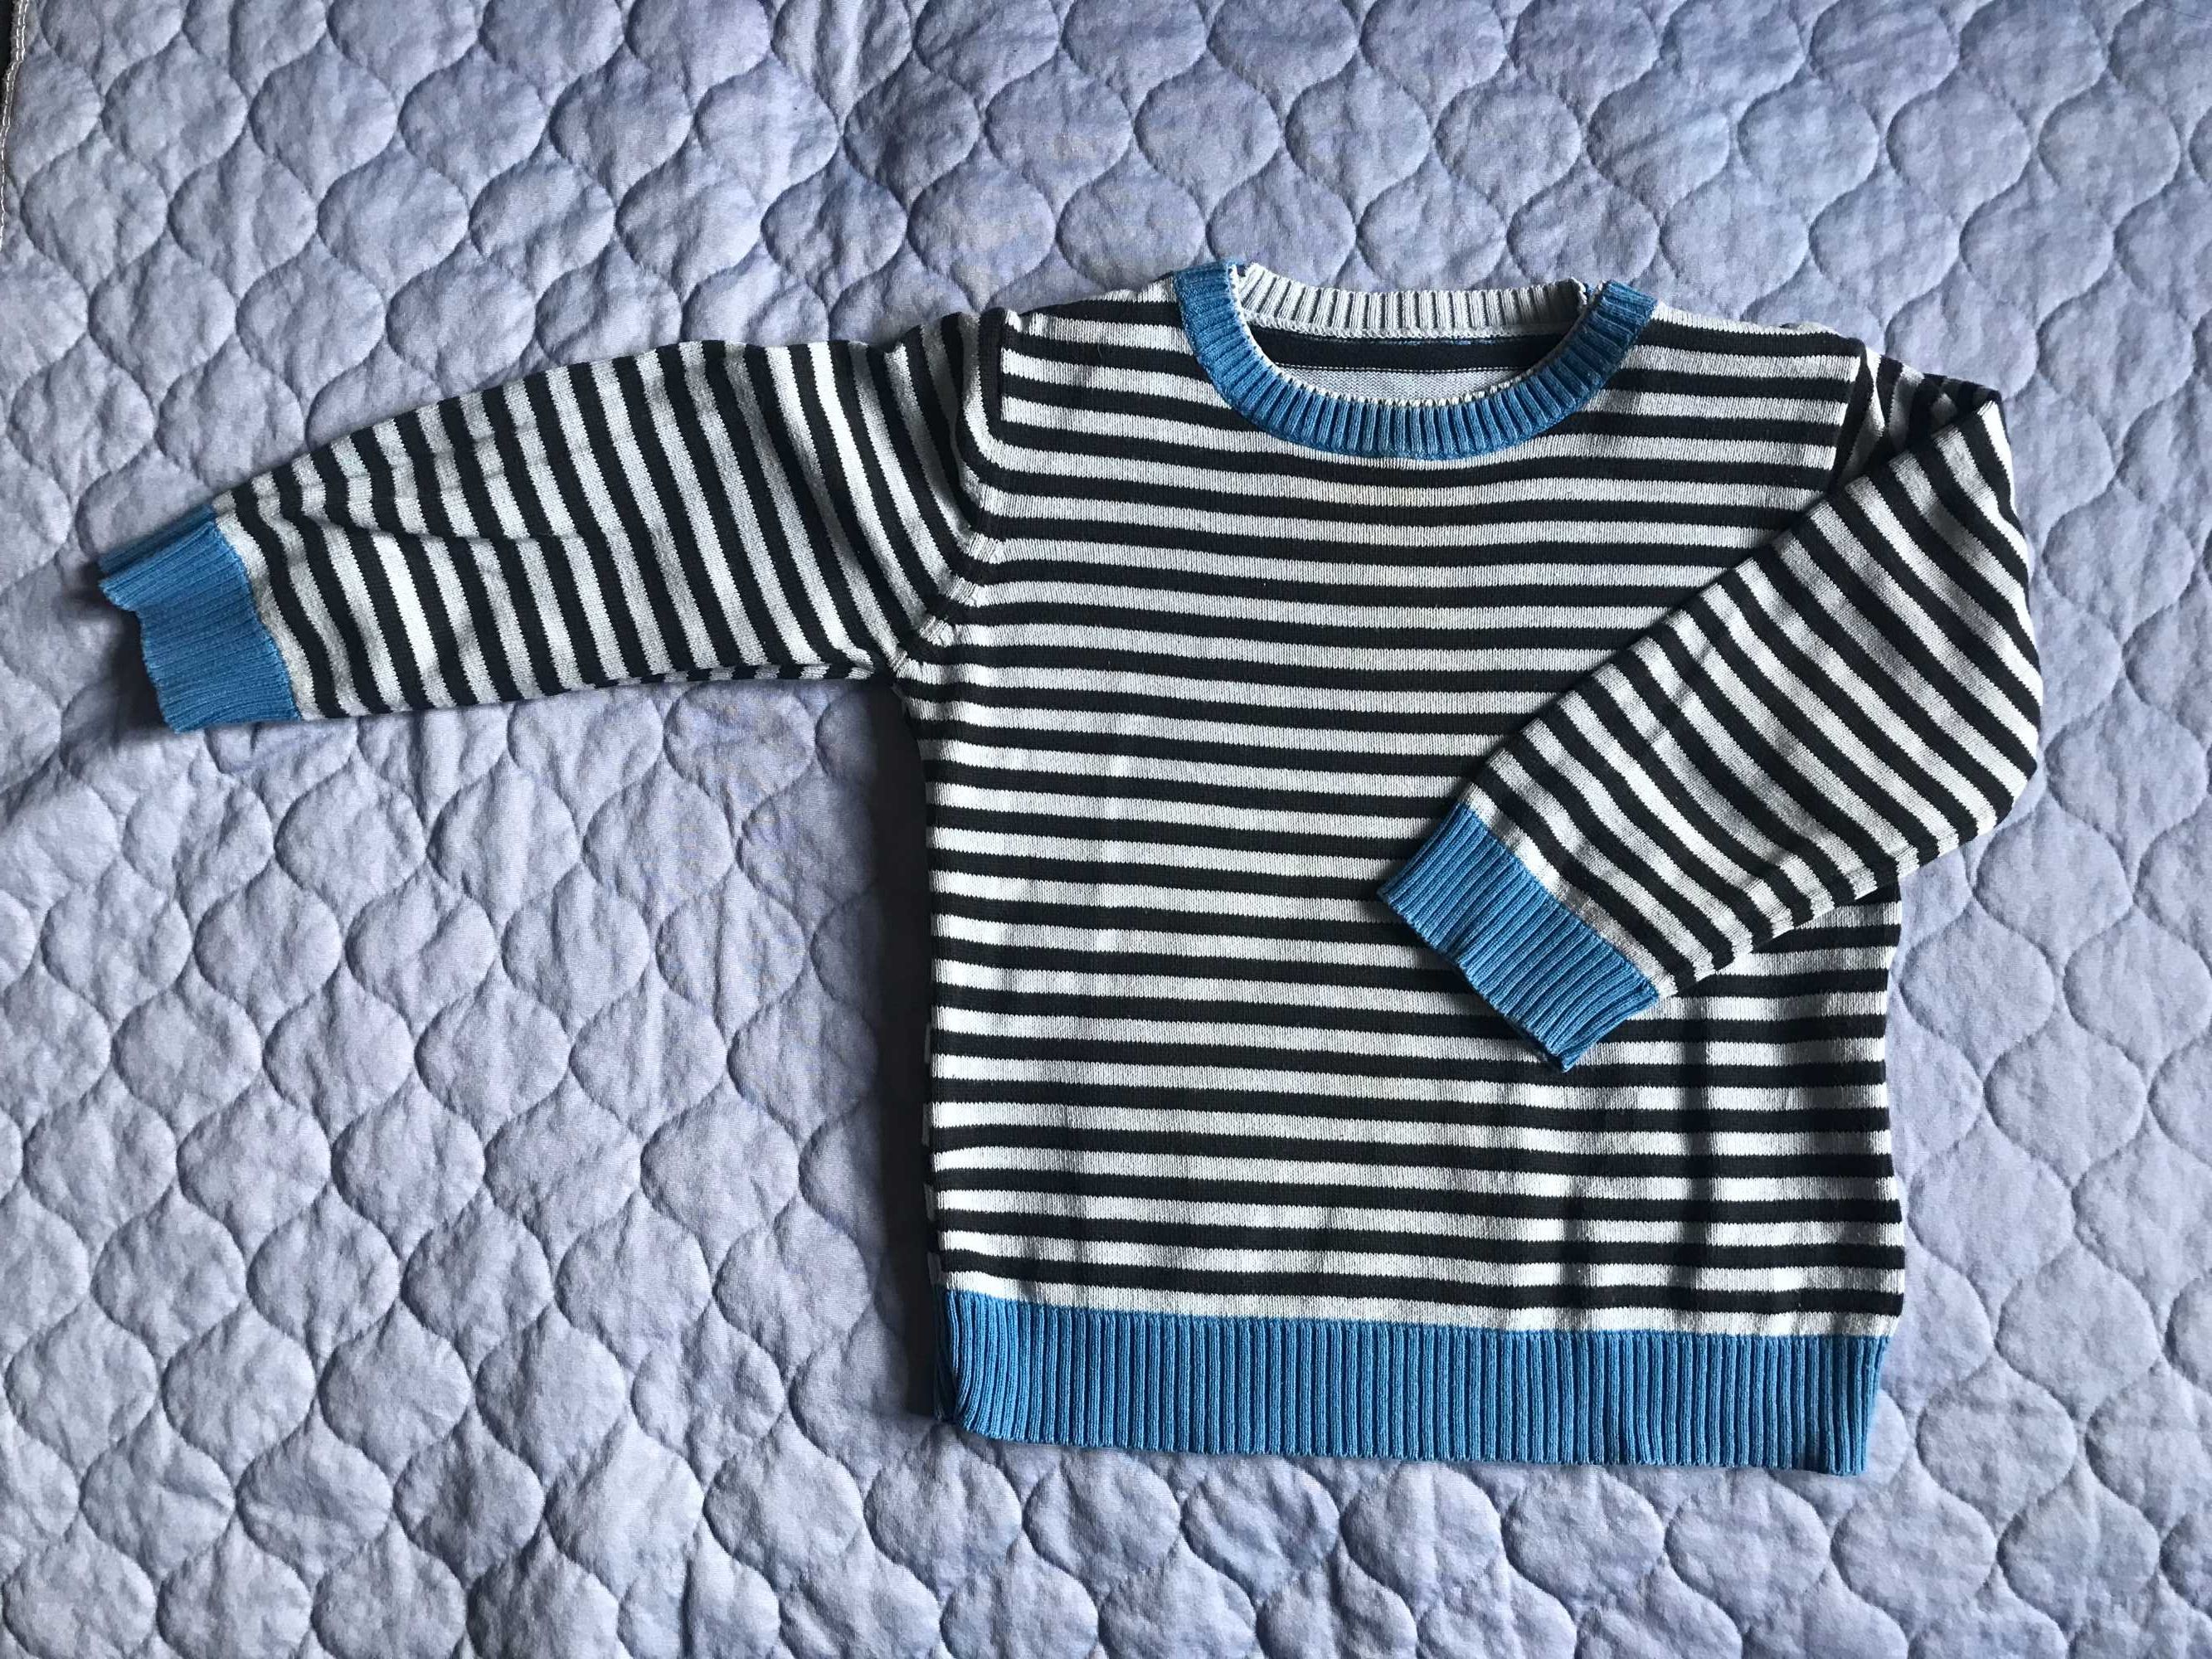 Sweterki, dwie sztuki, bawełniane, cieńsze, rozmiar 98